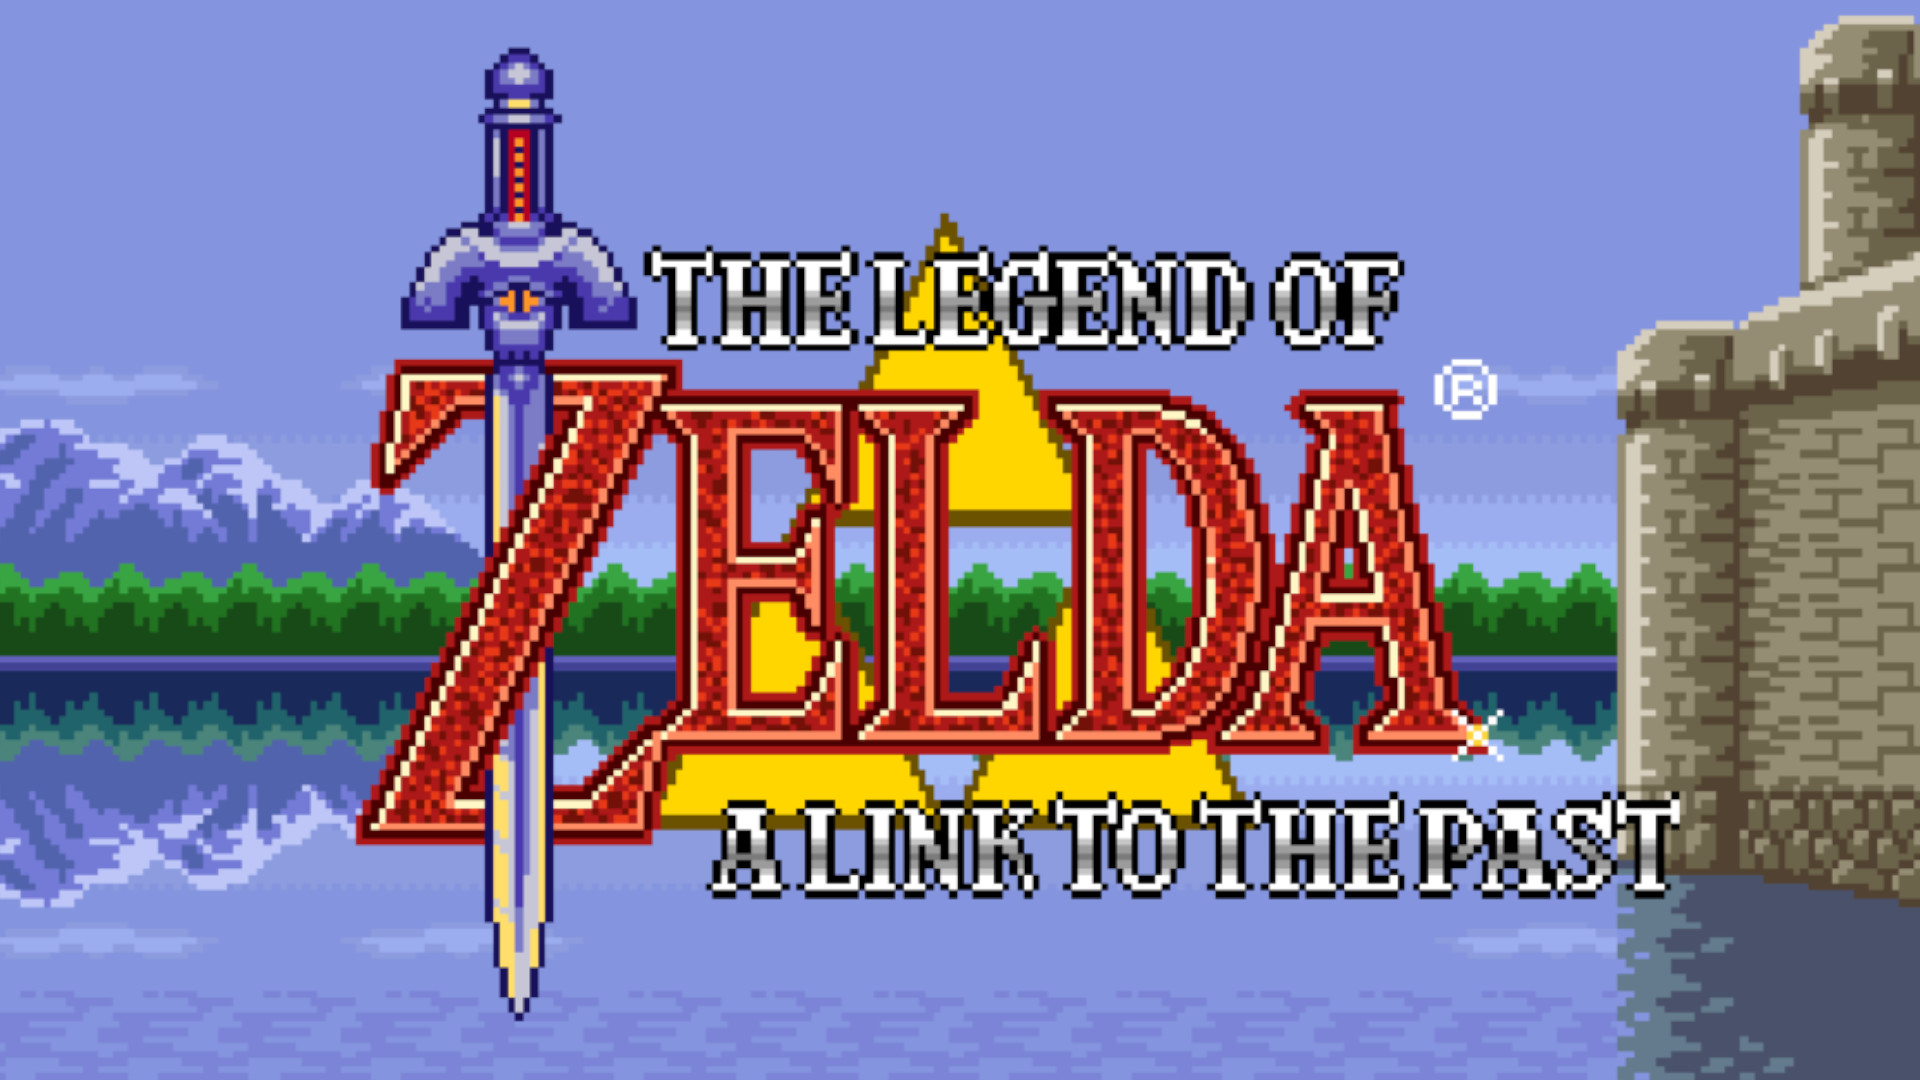 Zelda - The Legend Of Zelda ROM - NES Download - Emulator Games